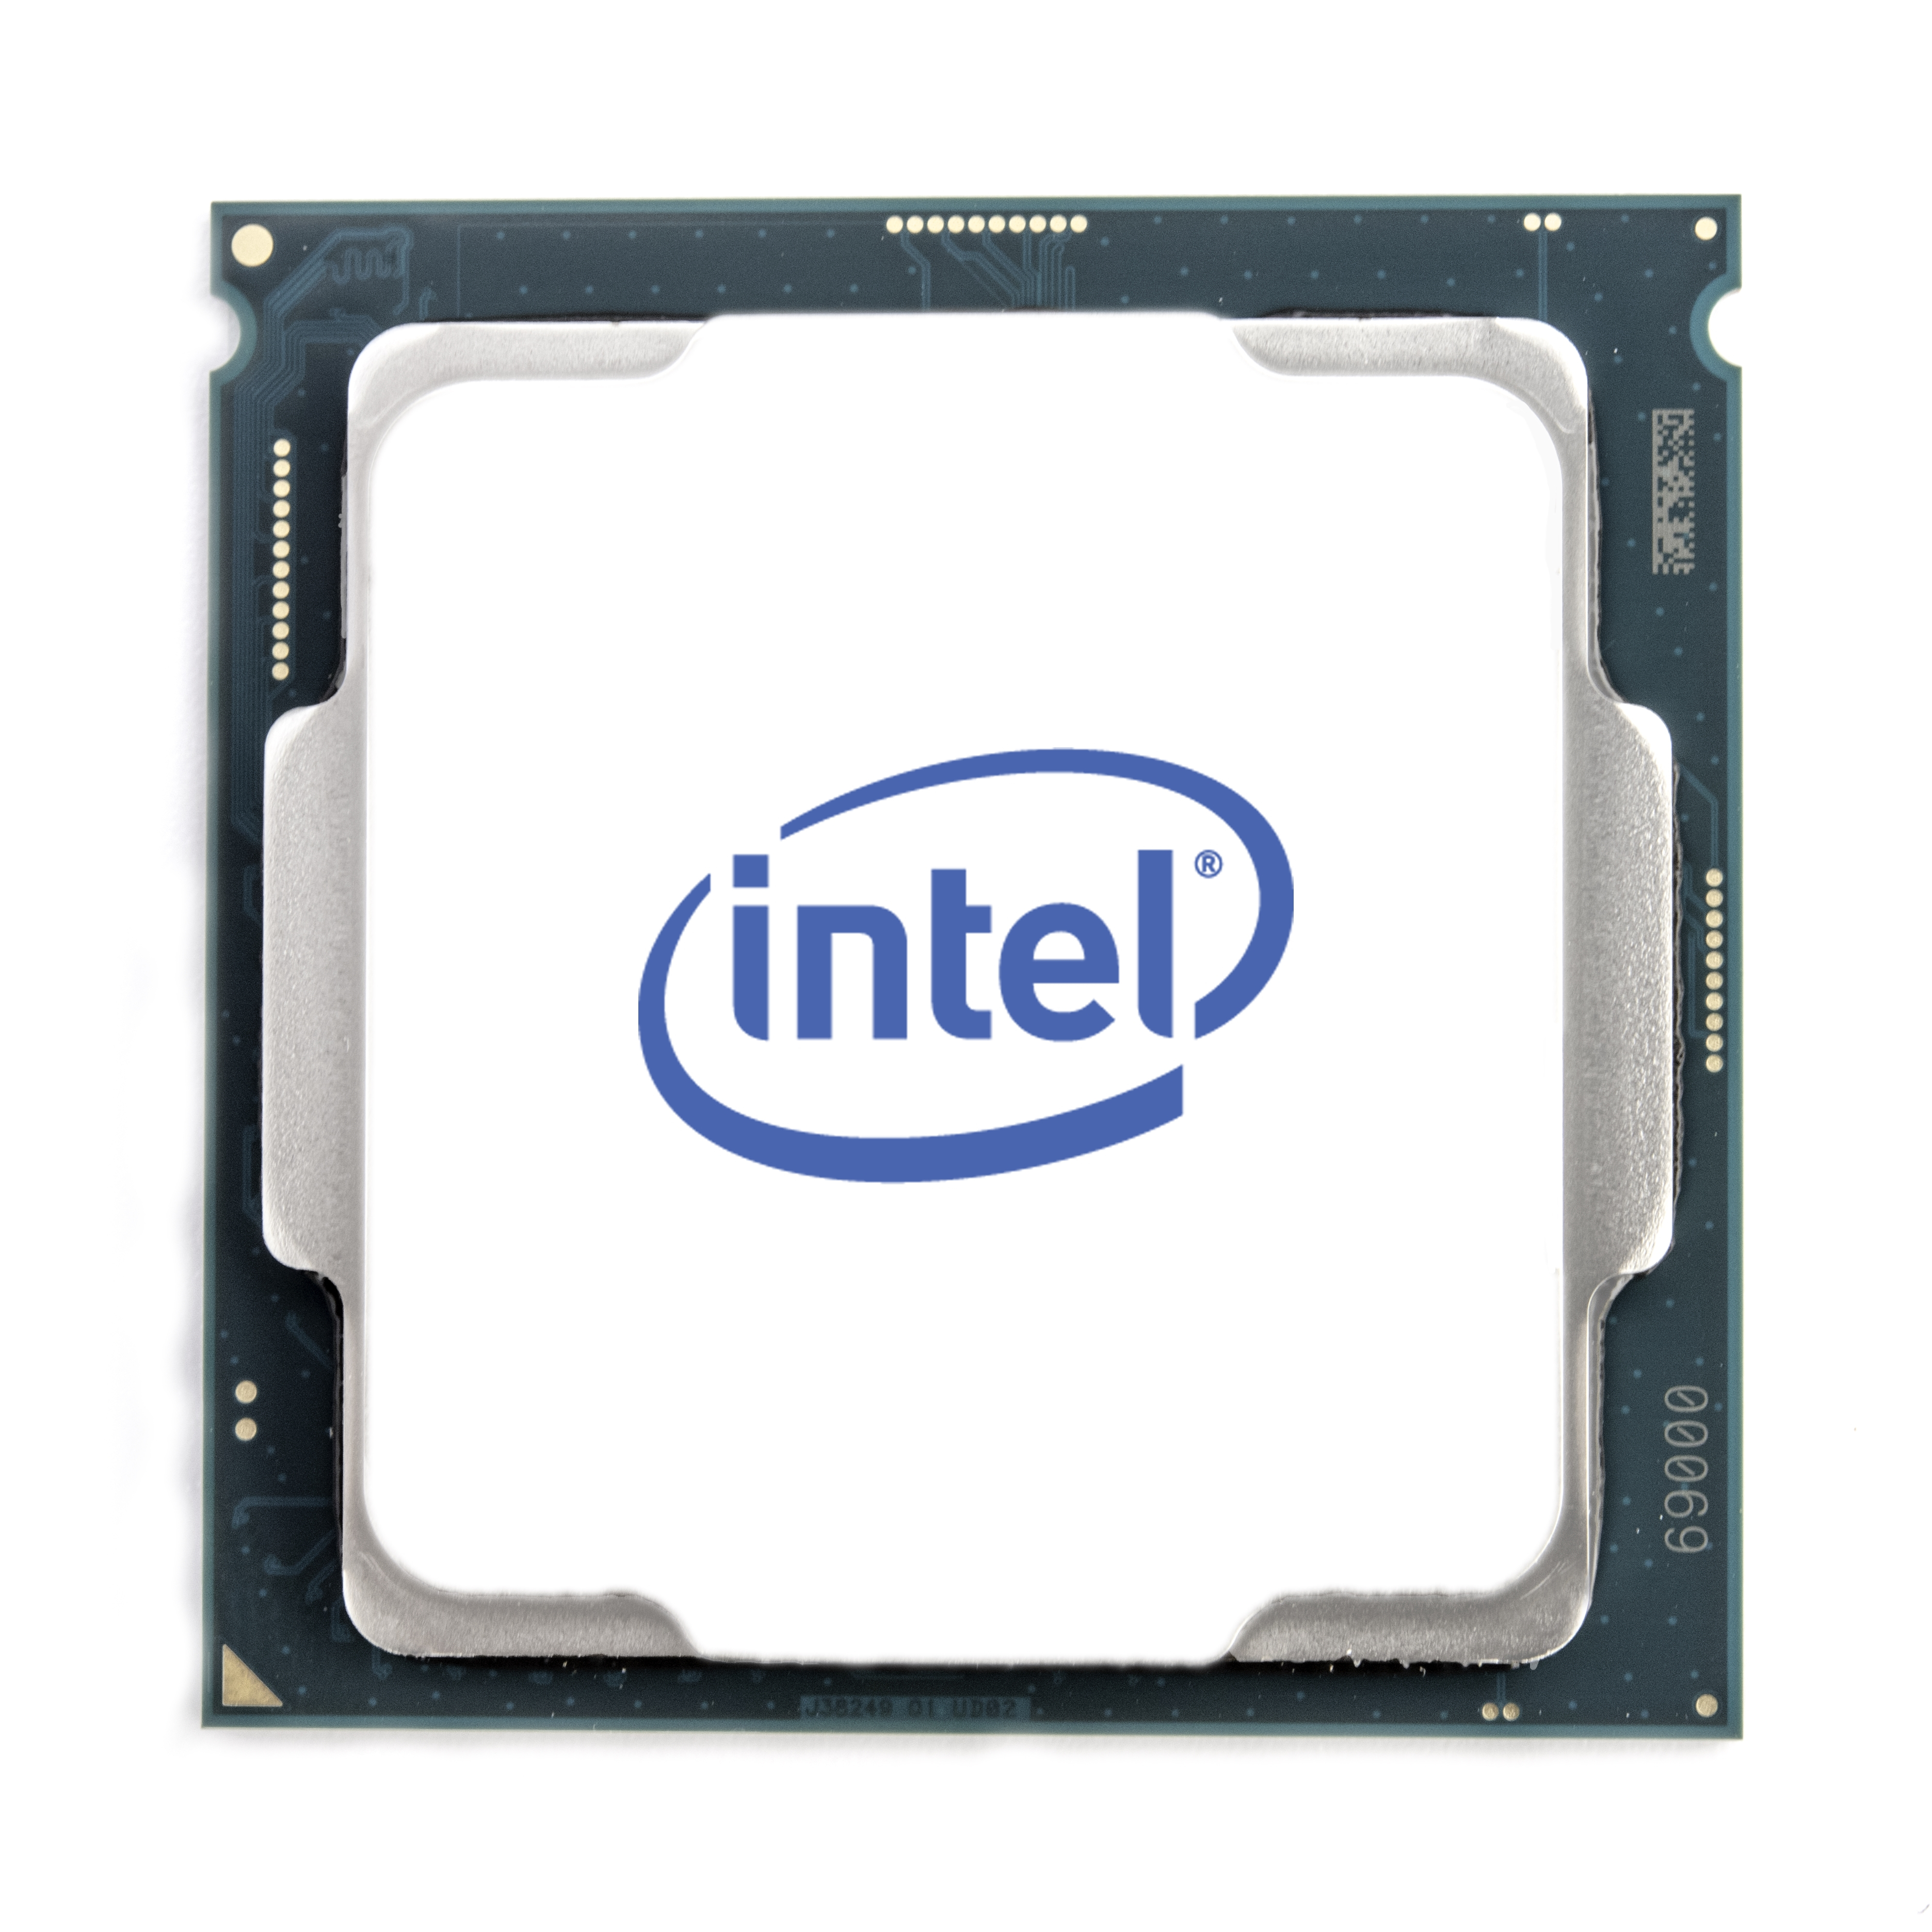 Intel Core Extreme Edition i9-10980XE